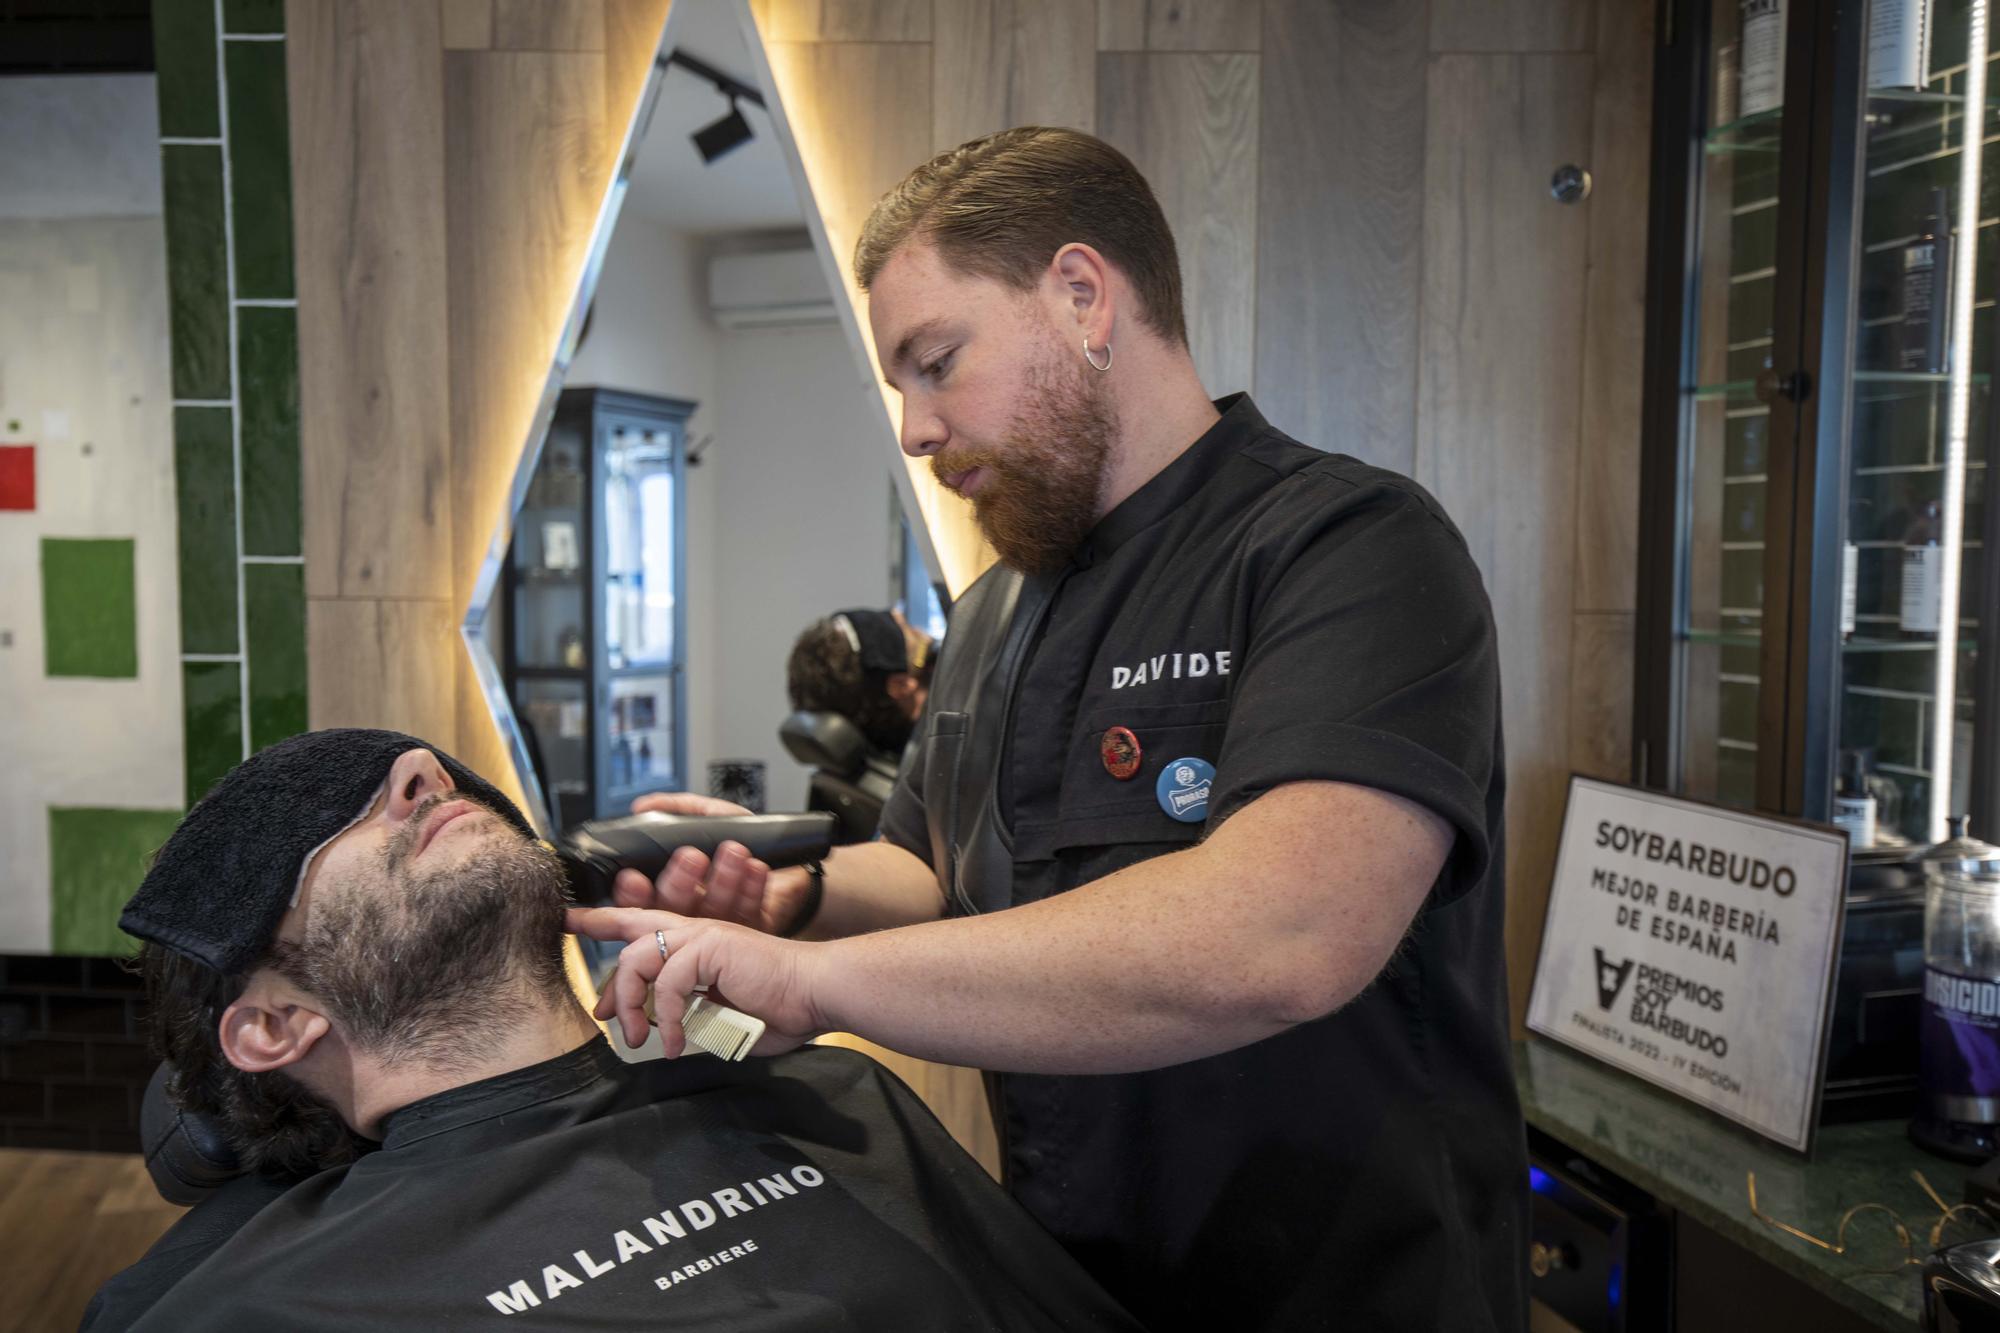 Una barbería de Santa Catalina, entre las diez mejores de España